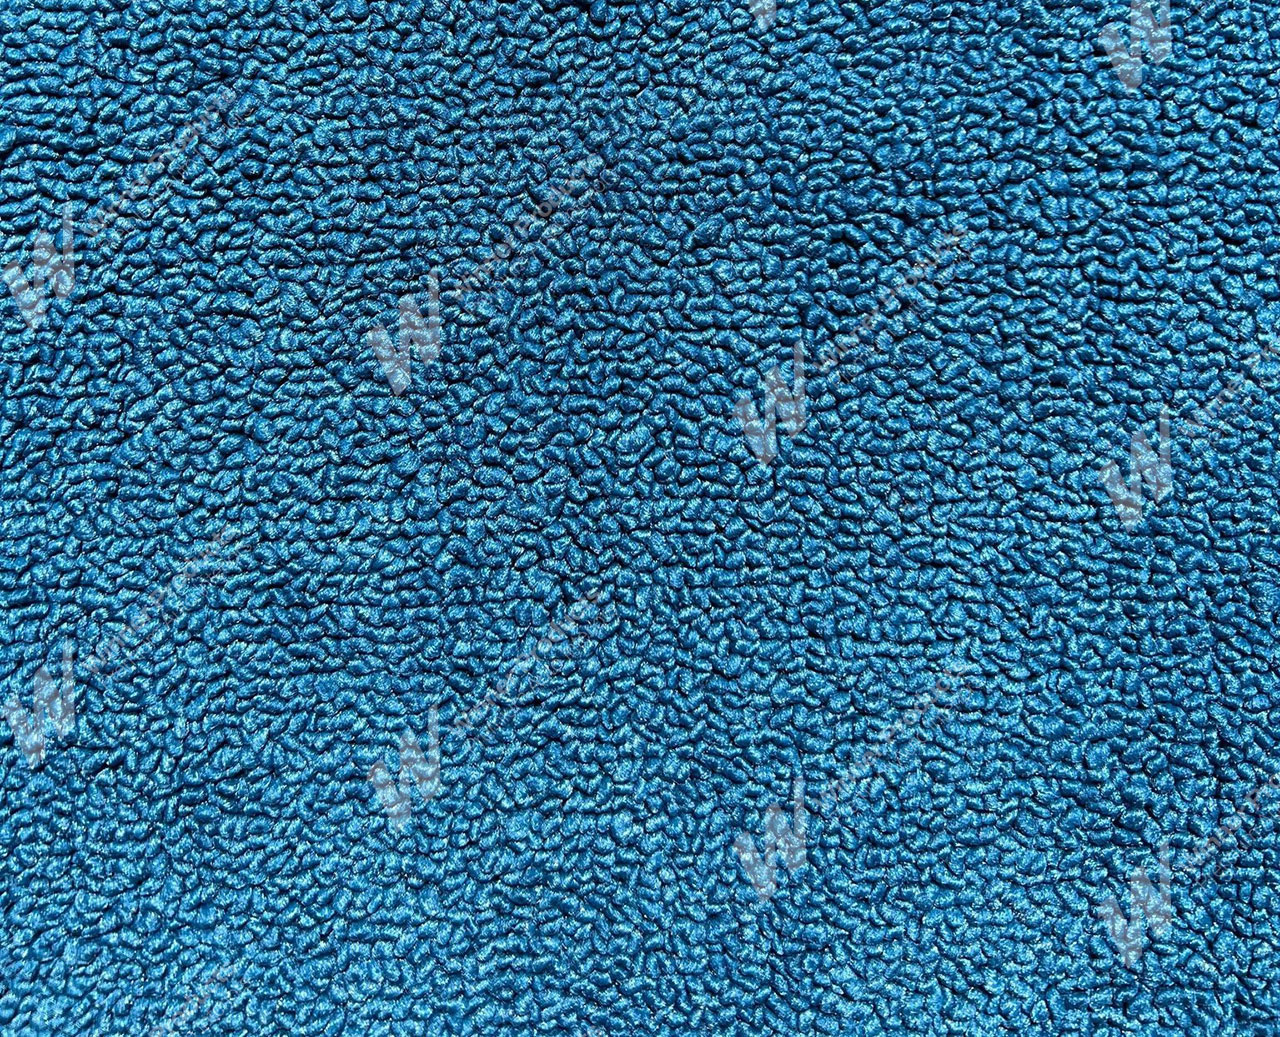 Holden Premier HG Premier Sedan 14R Twilight Blue Carpet (Image 1 of 1)